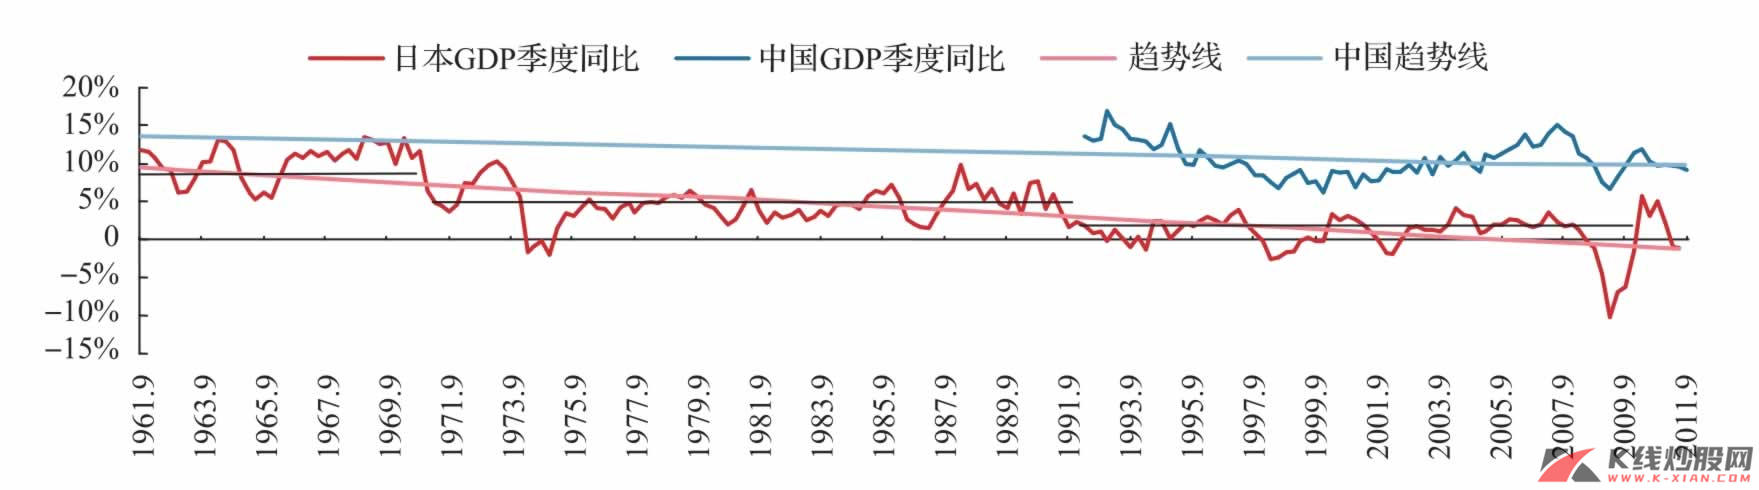 日本经济增长中枢的阶梯式下移